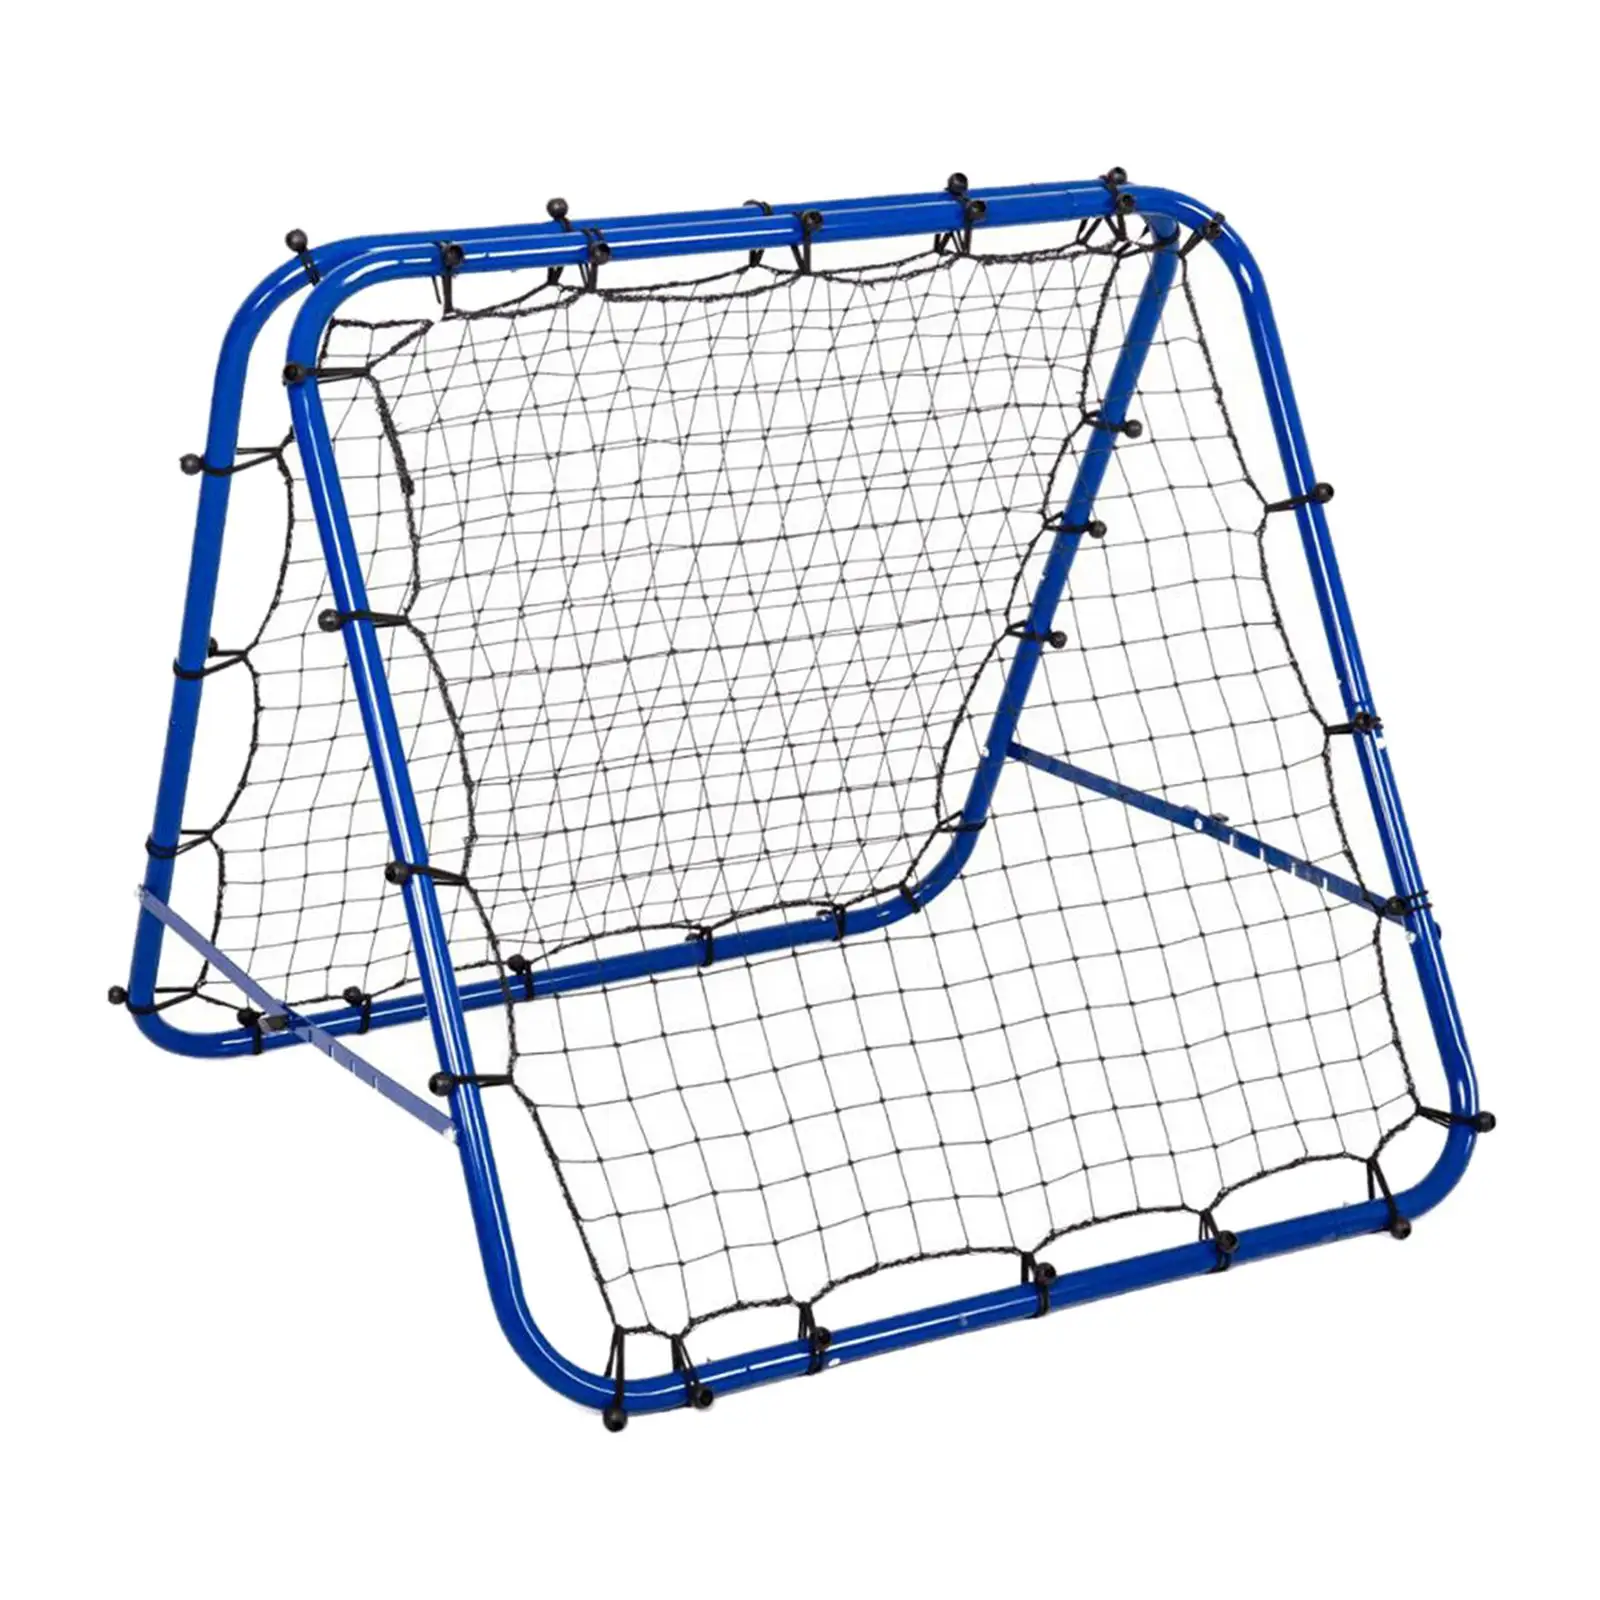 Portable Soccer Goal for Kids and Adults Soccer Rebounder Net Steel Frame